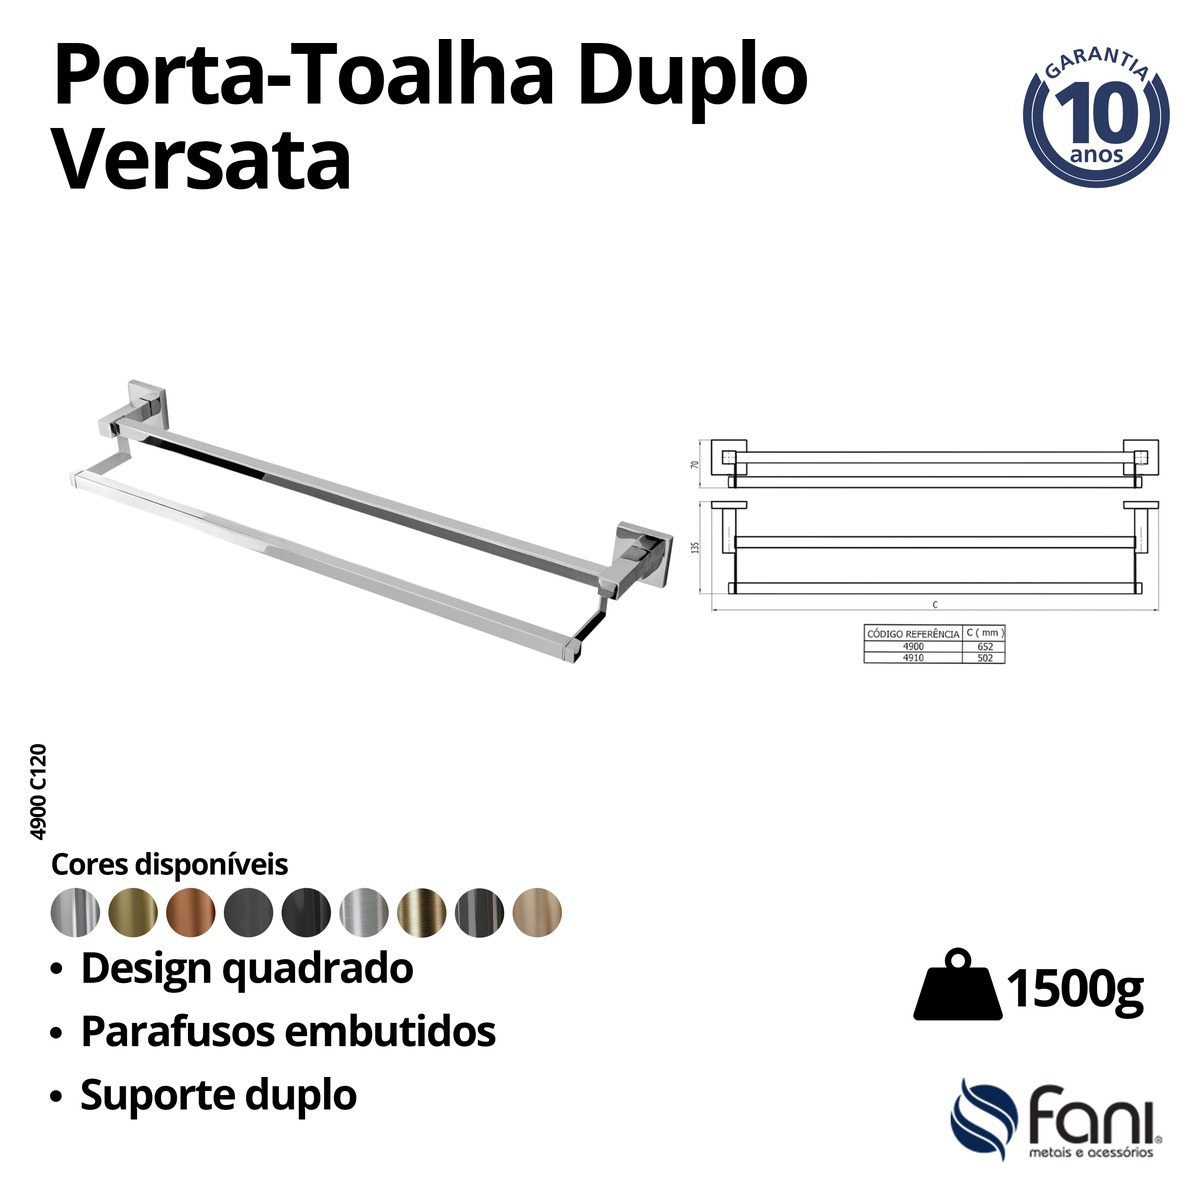 Porta Toalha Reto Longo 65,2cm Duplo Versata 4900OV120 Ouro Velho Fani